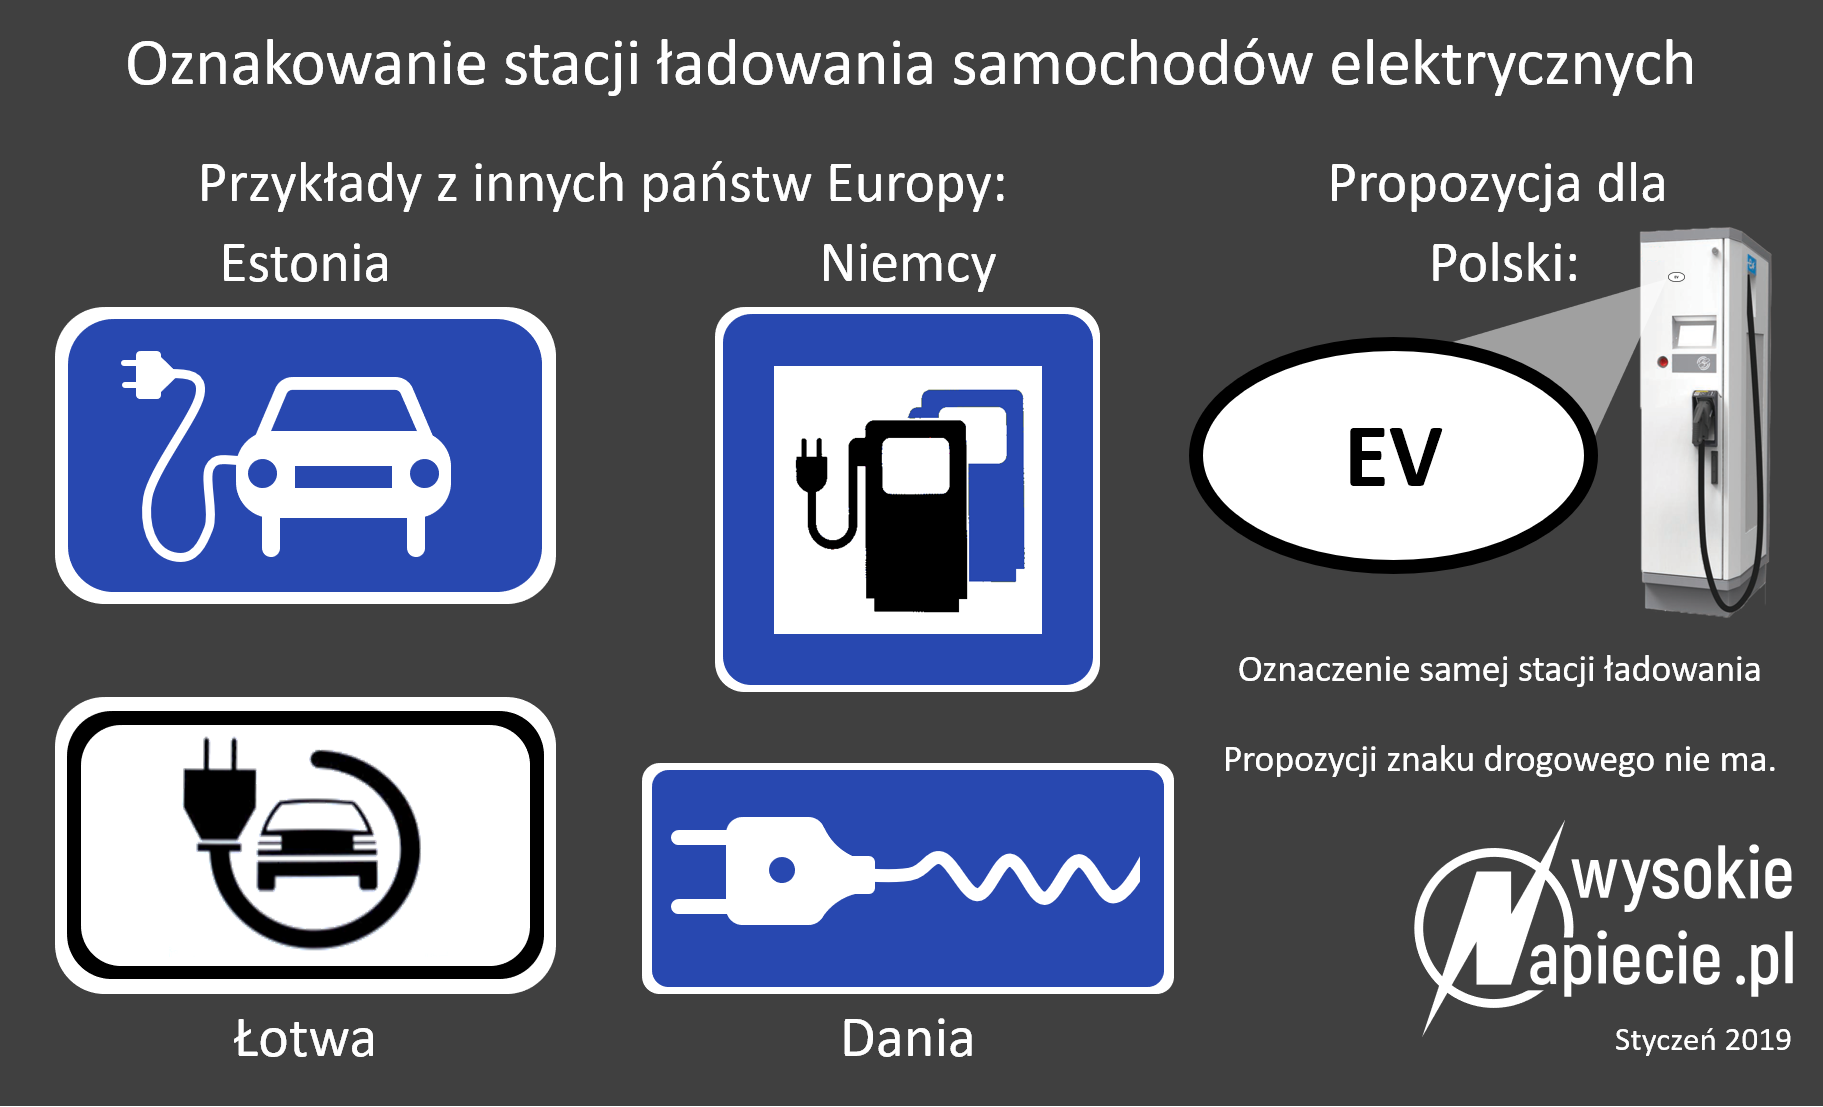 ev oznaczenie ladowania samochodow elektrycznych